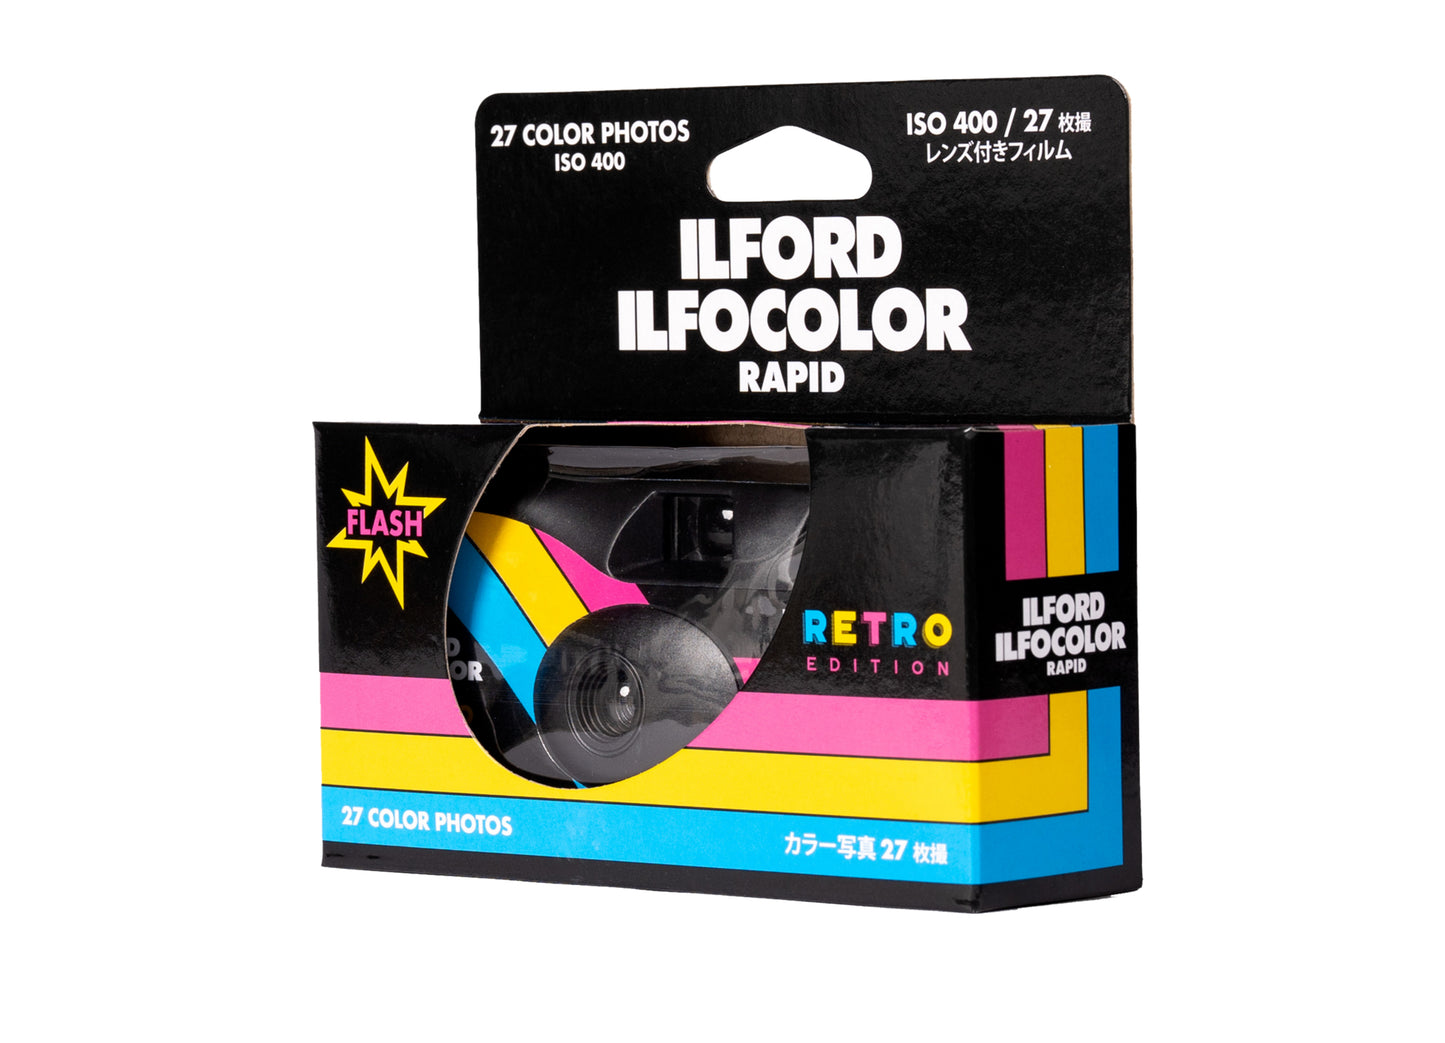 Ilford Ilfocolor Engångskamera Rapid 27ex ISO 400 Svart